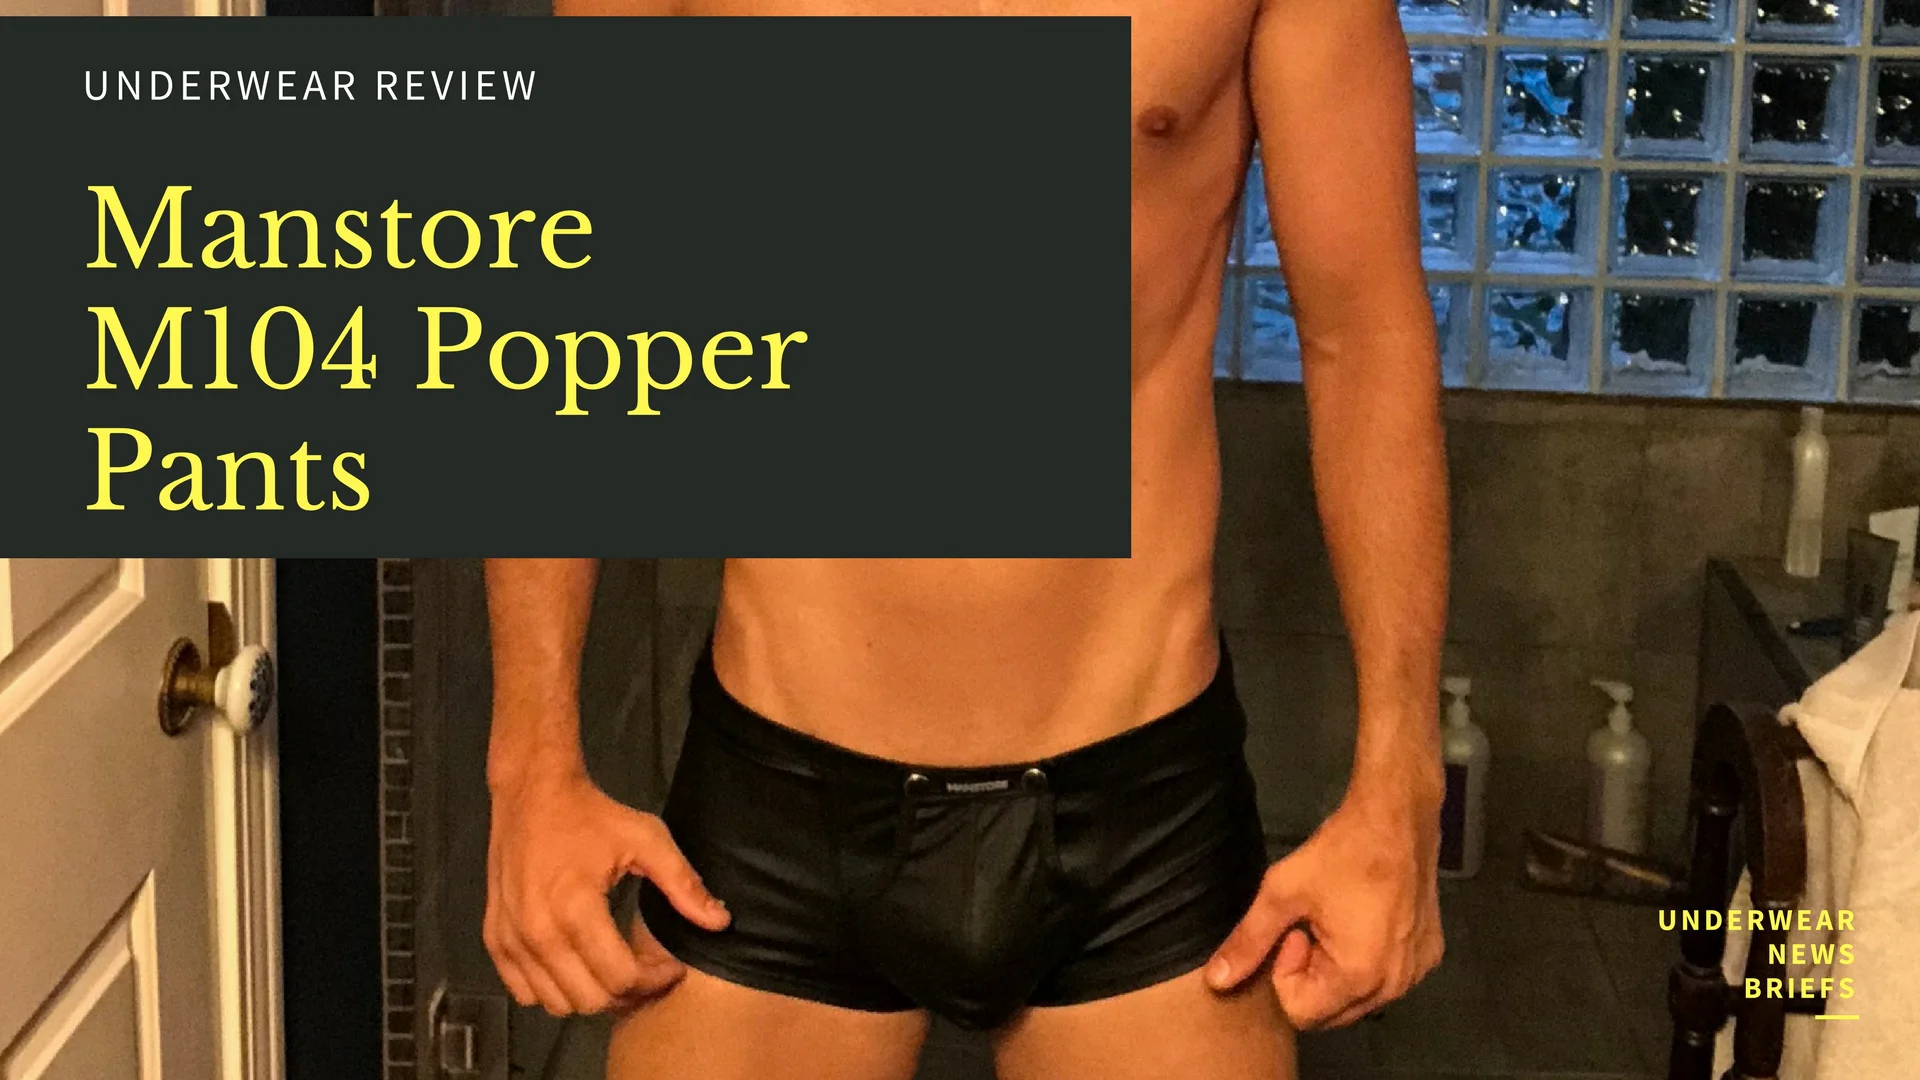 Video Underwear Review - STUD Underwear Ranker Brief on Vimeo